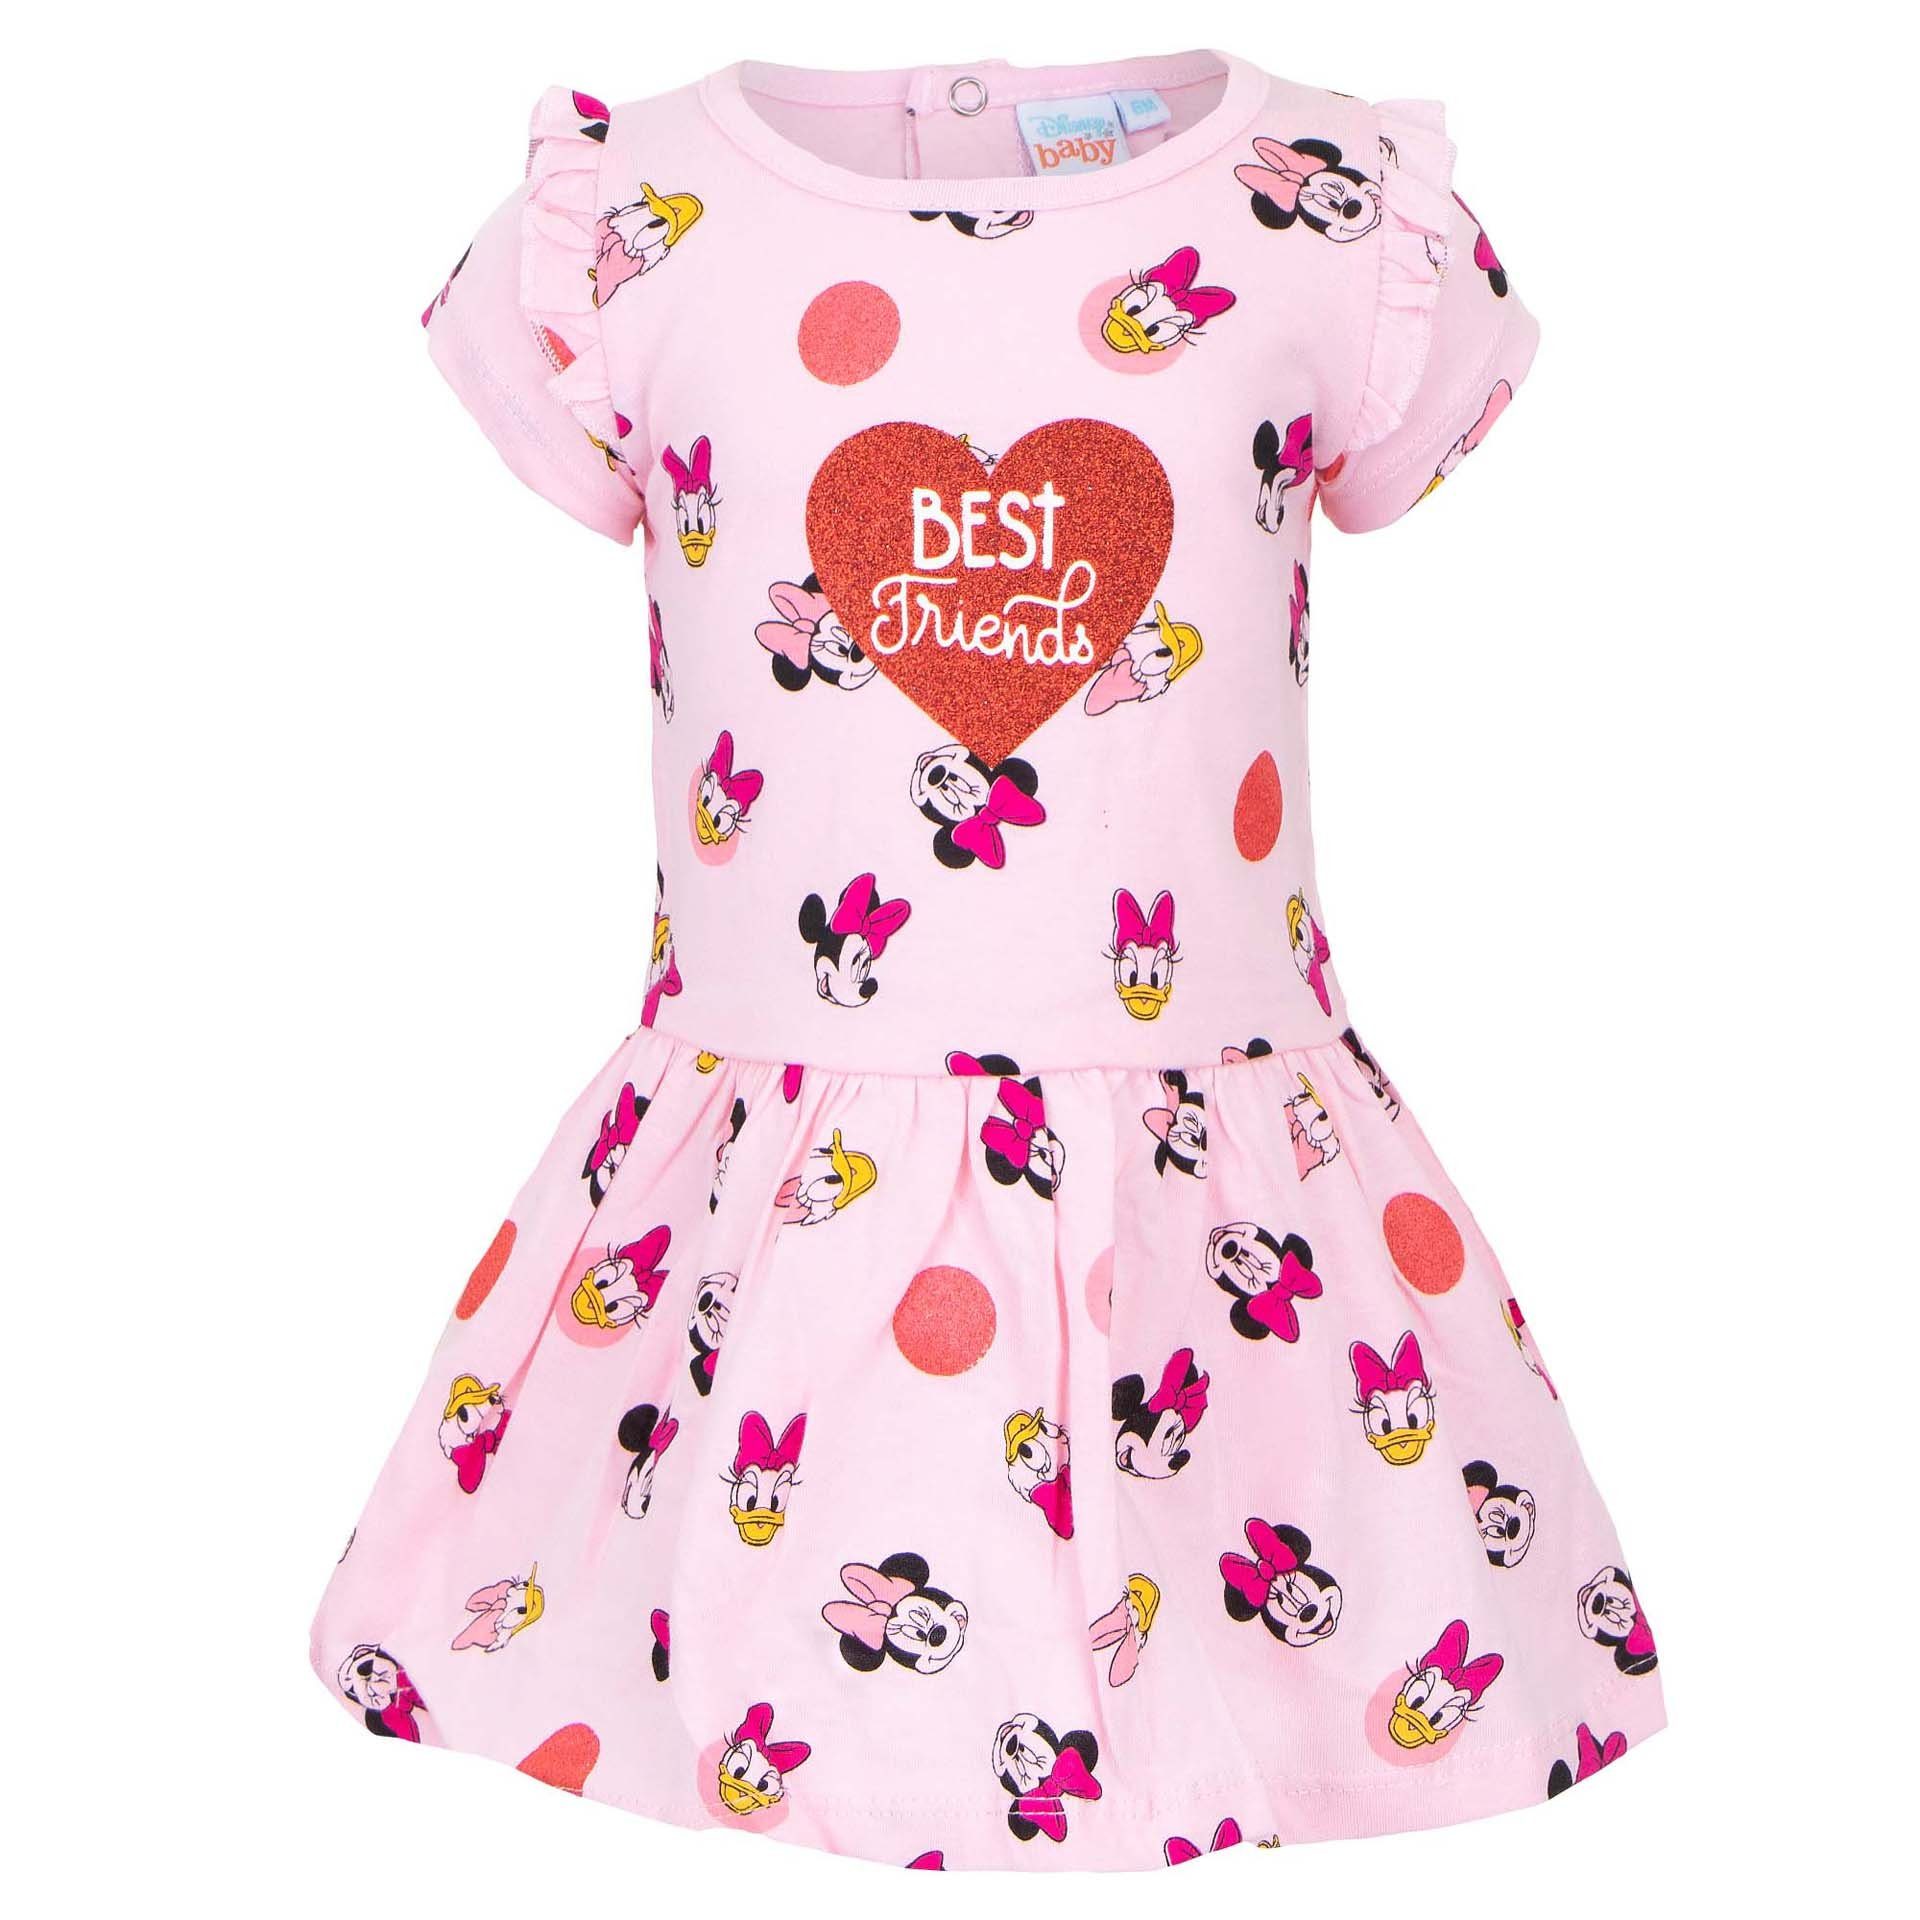 Disney Minnie Mouse Sommerkleid Minnie Maus und Daisy Duck Baby Kleid Gr. 68 bis 86, 100% baumwolle Rosa